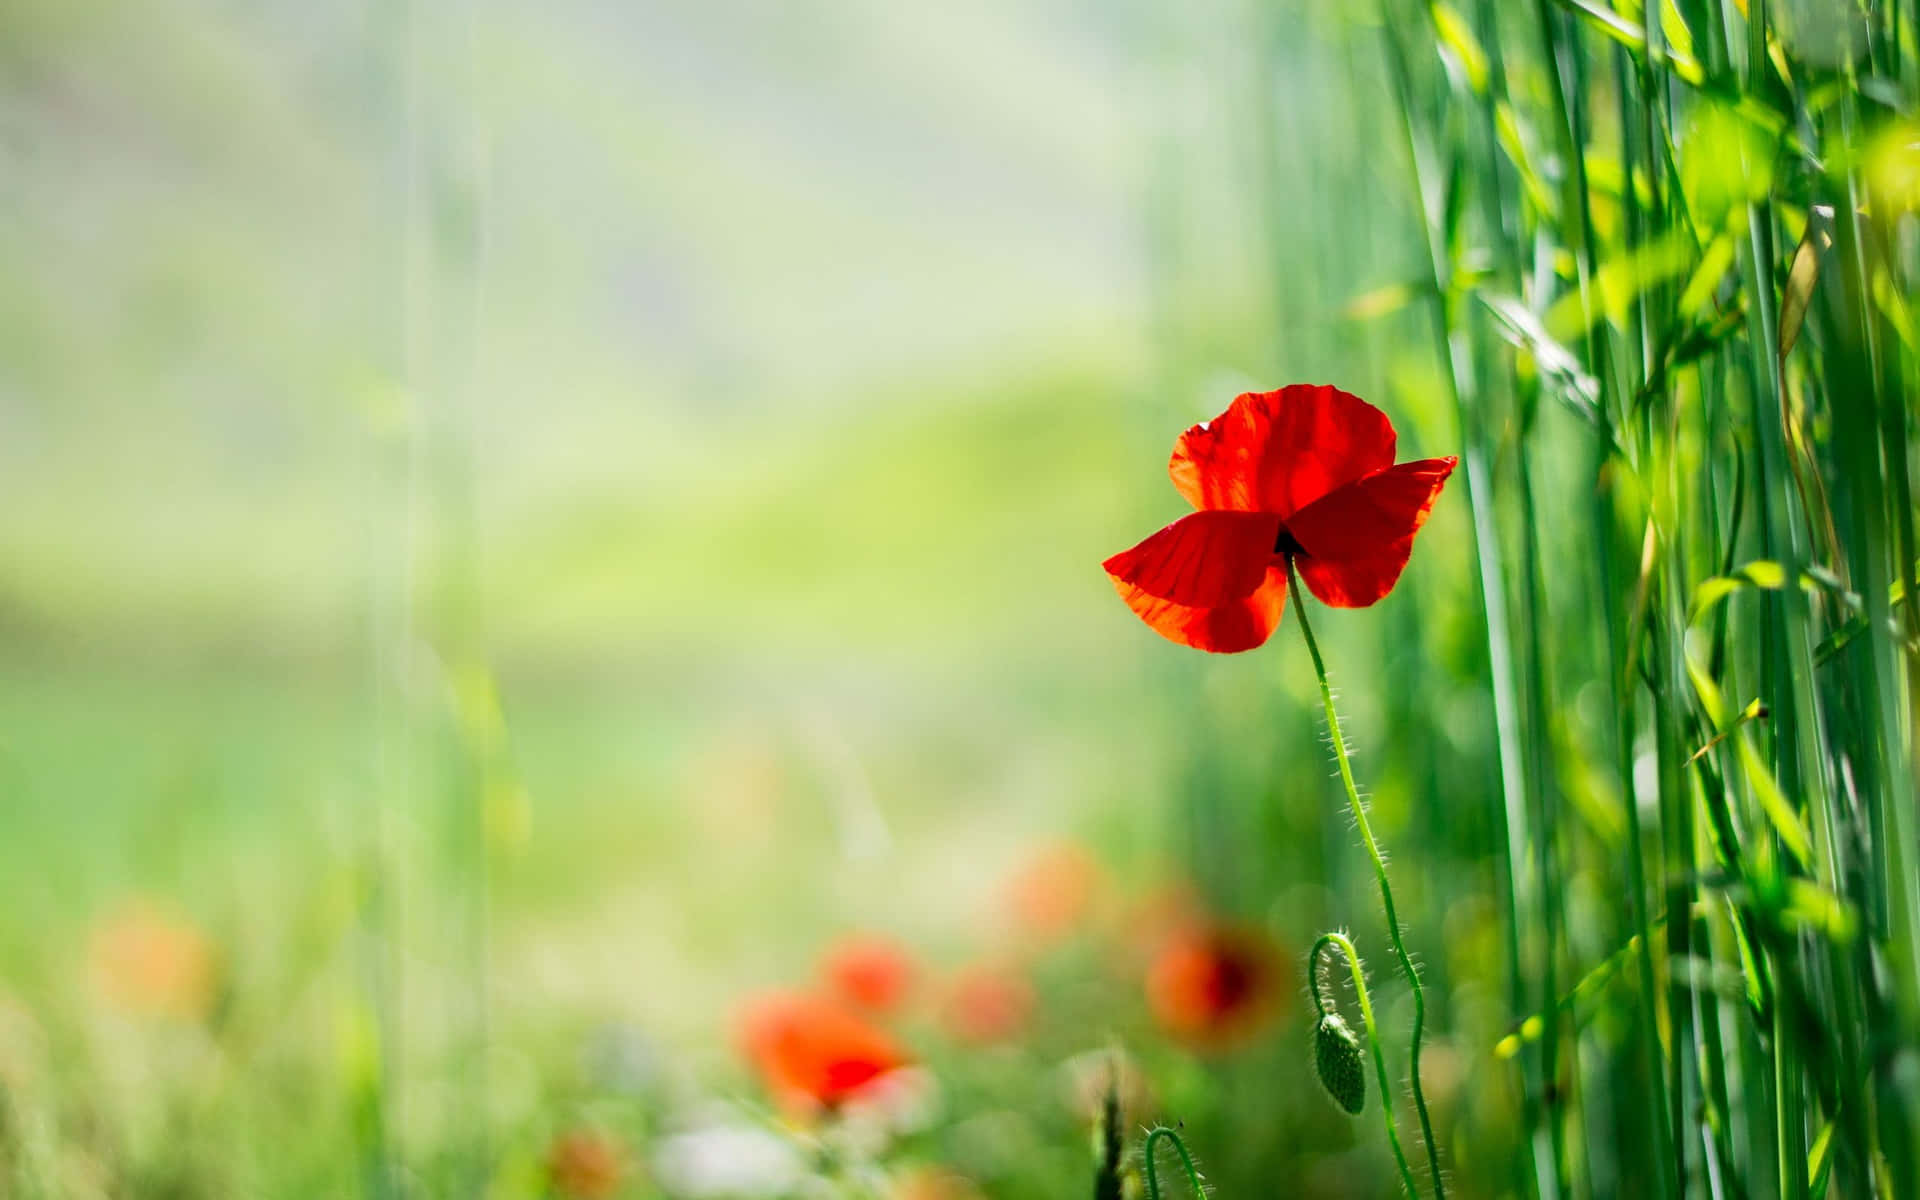 Eineleuchtend Rote Mohnblume Sticht Gegen Den Lebendigen Blauen Himmel Hervor!